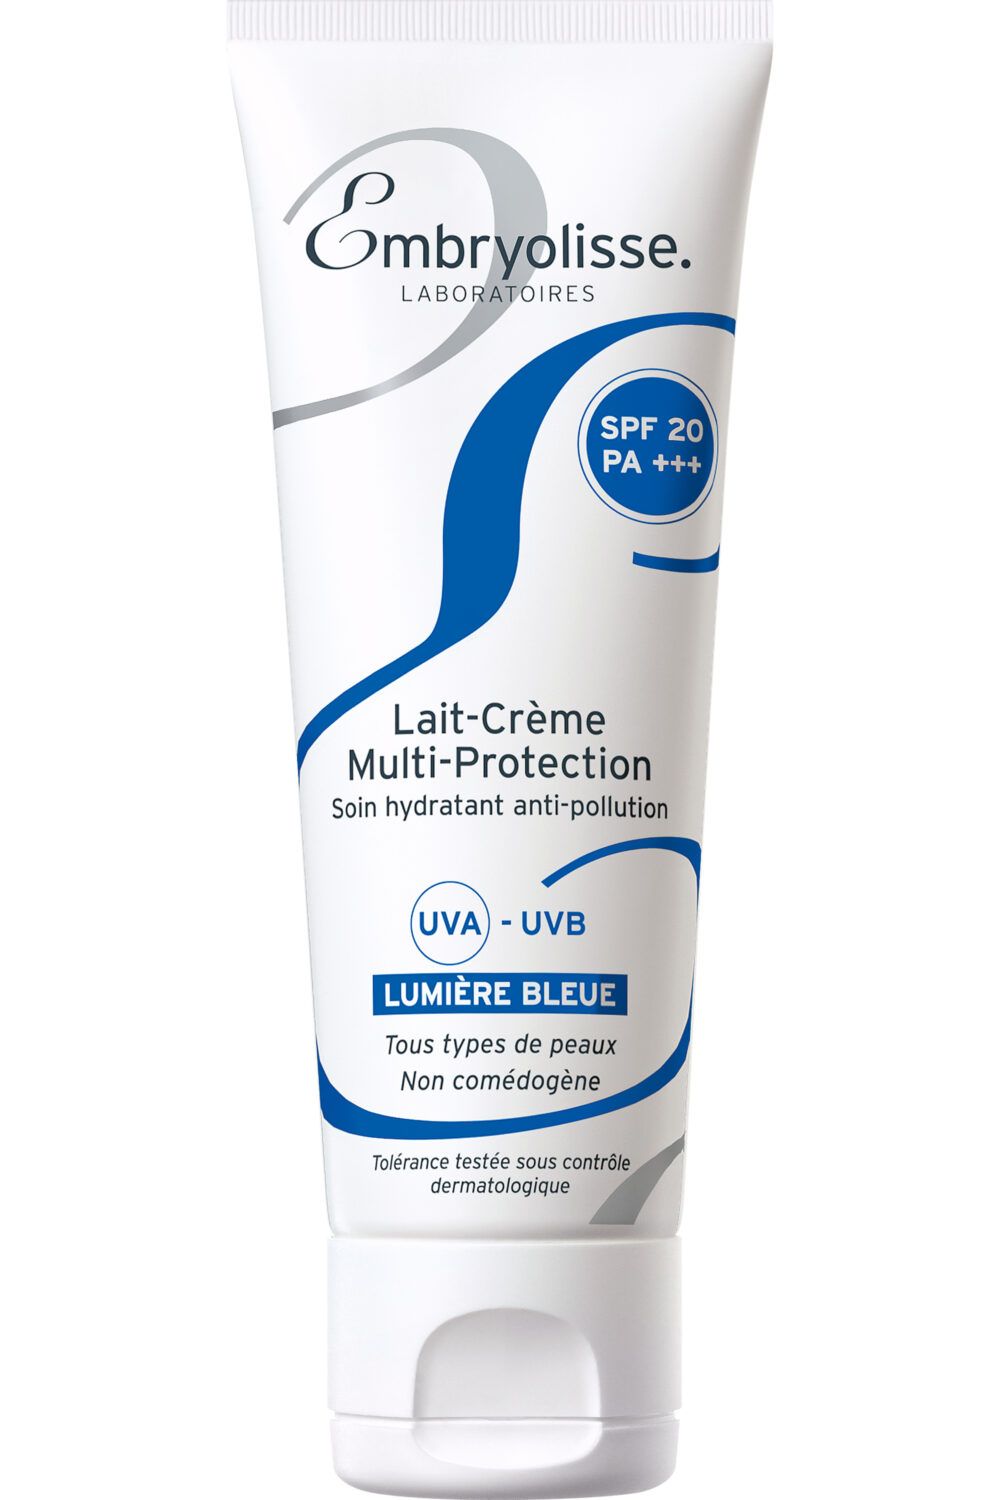 Embryolisse - Lait-Crème multi-protection SPF20